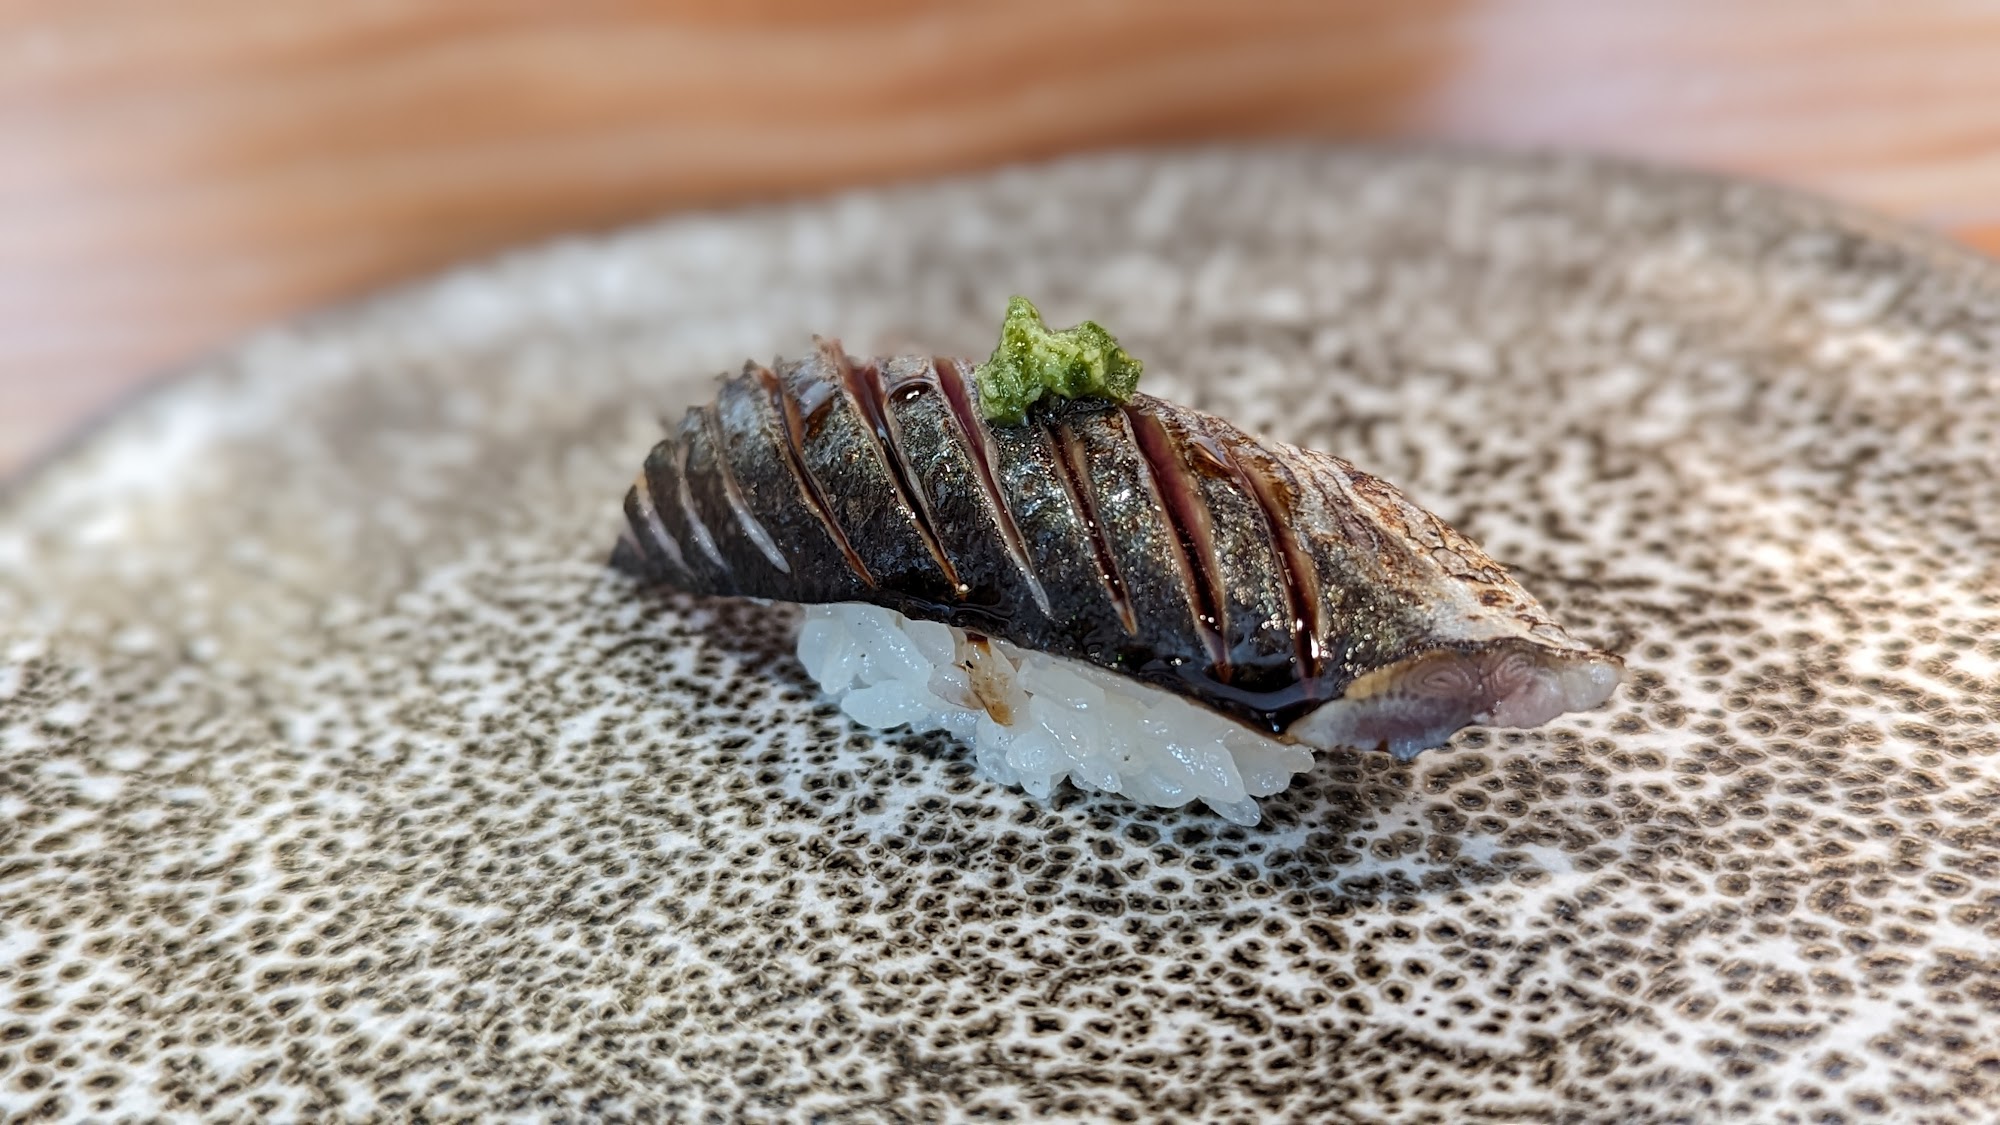 Sushi Takeda